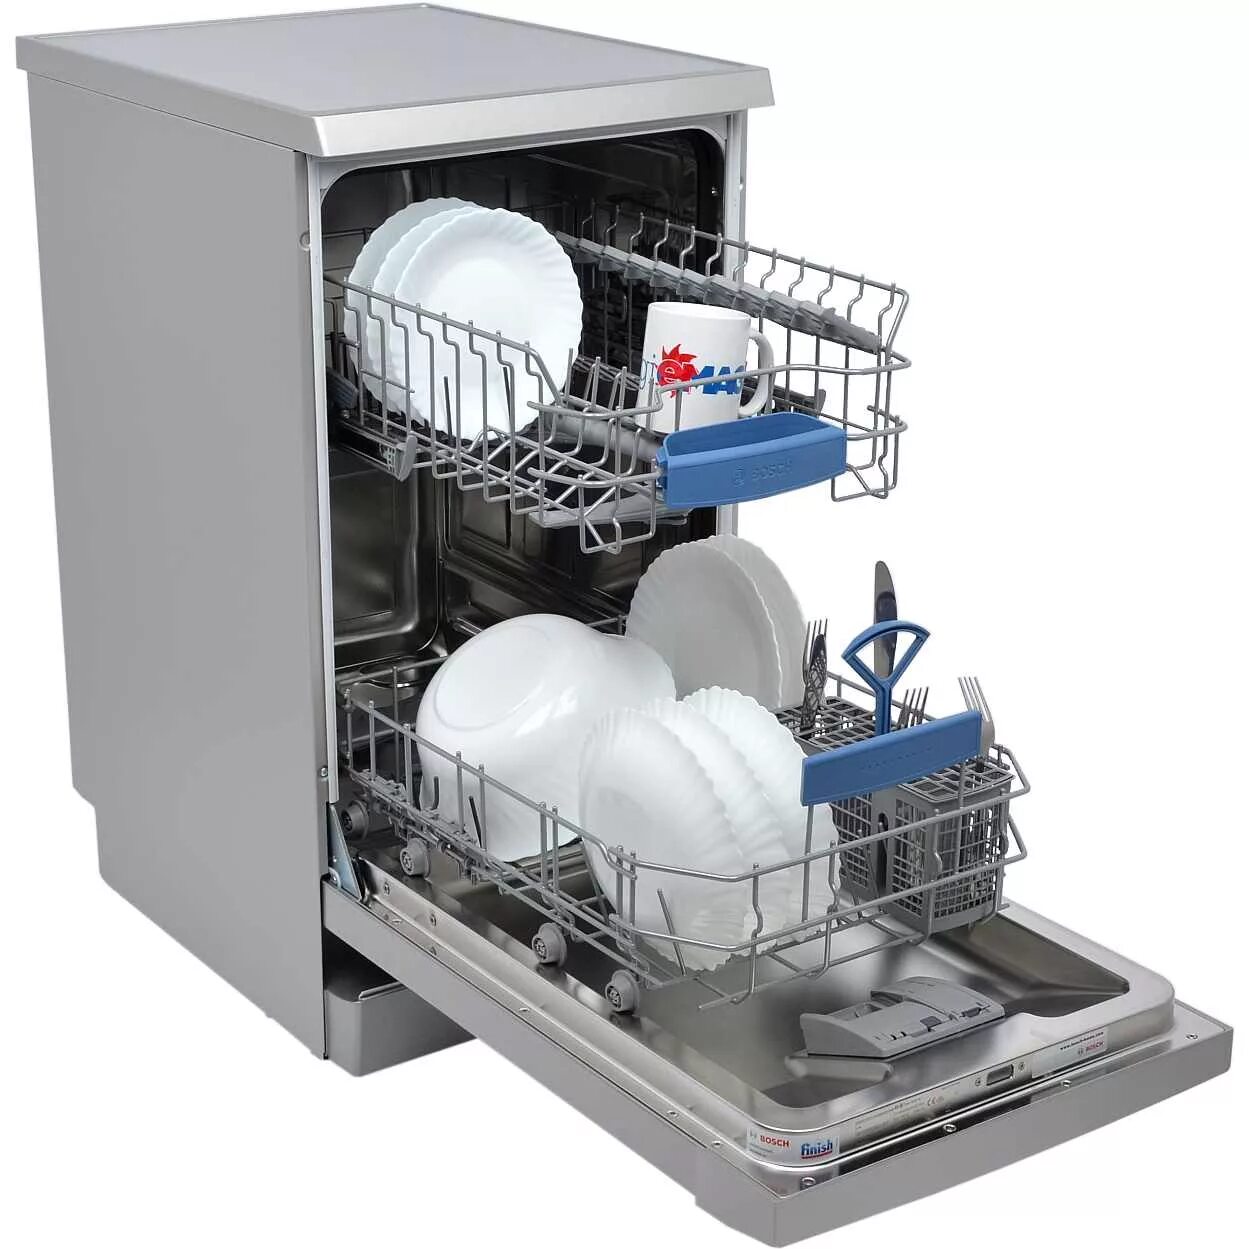 Купить отдельную посудомоечную машину. Посудомоечная машина Bosch sps2ikw1br. Посудомоечная машина Neff s855hmx50r. ПММ бош sps53. Посудомоечная машина Bosch spv6hmx1mr.